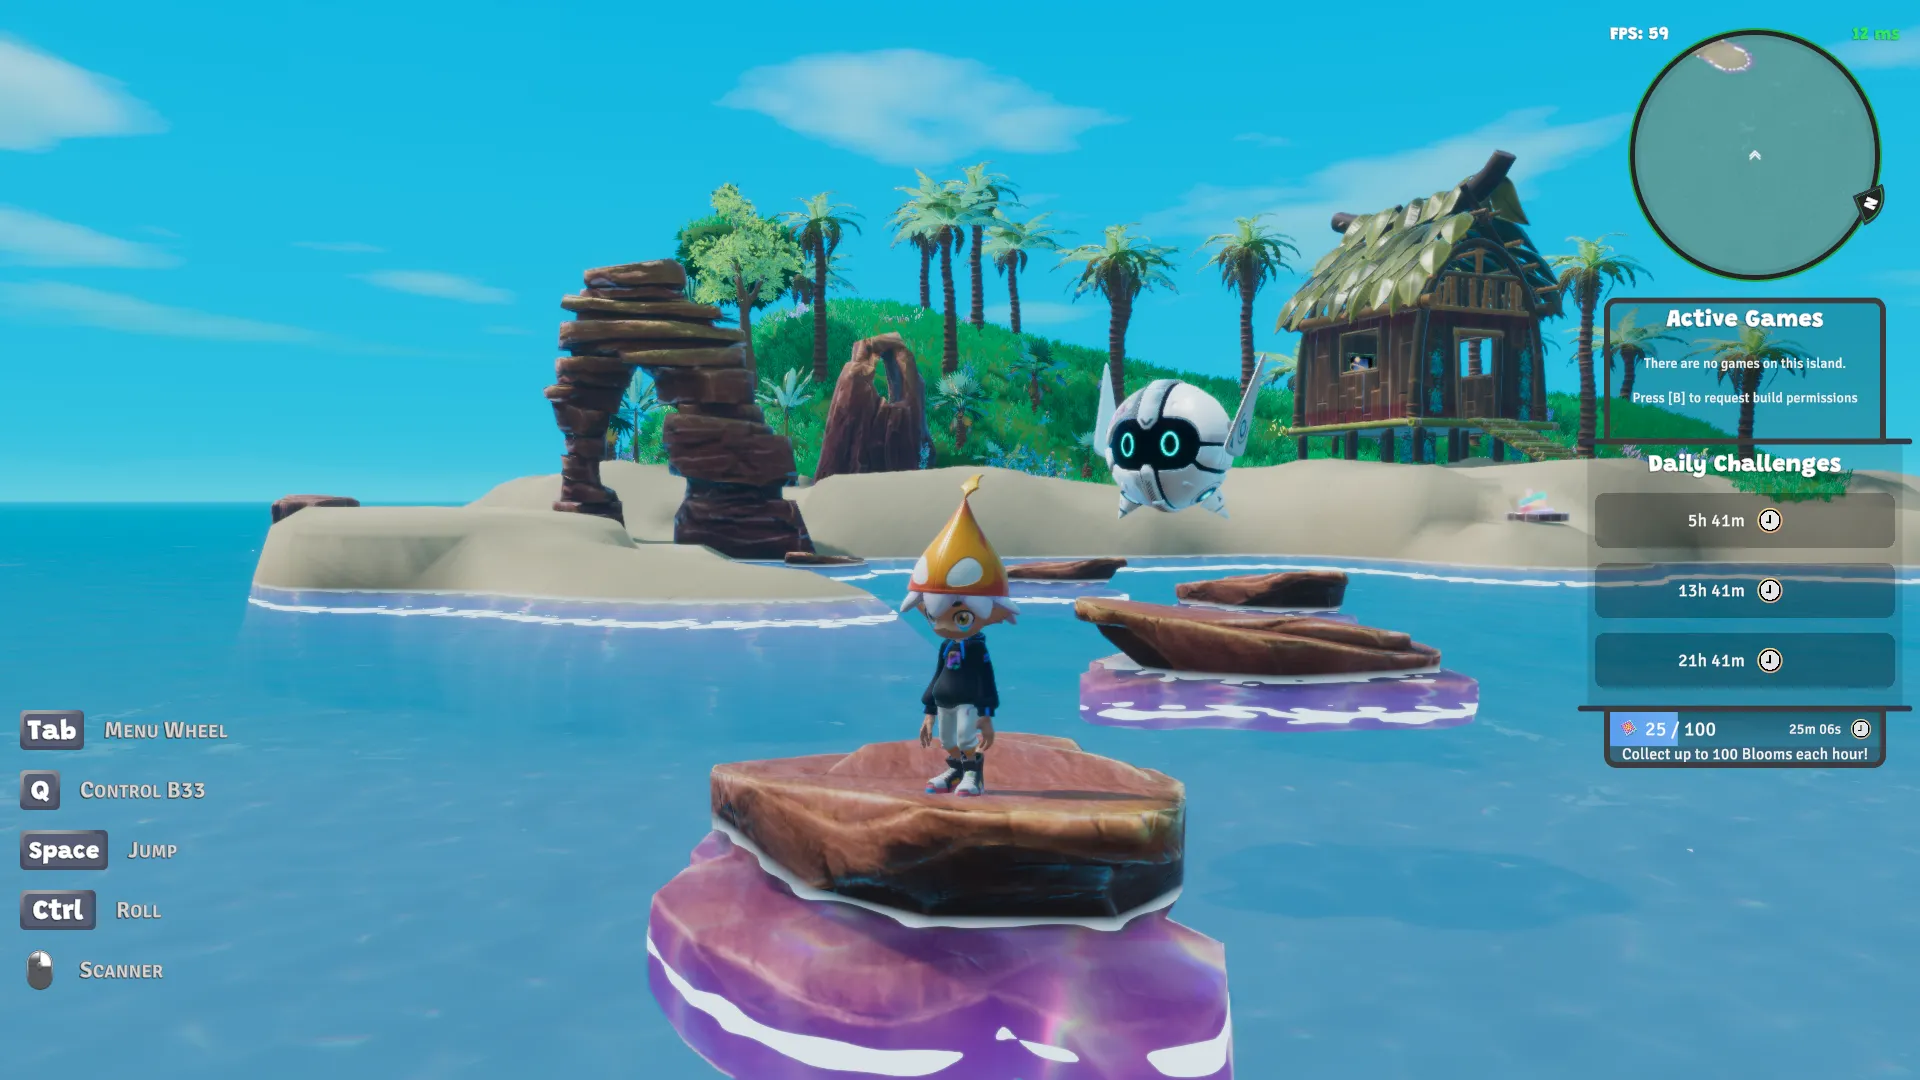 Captura de pantalla de Nifty Island que muestra una isla renderizada en 3D con formaciones rocosas en arco y escalones de roca en el agua. Sobre una de las rocas hay un pequeño personaje con sombrero y un robot flotante.